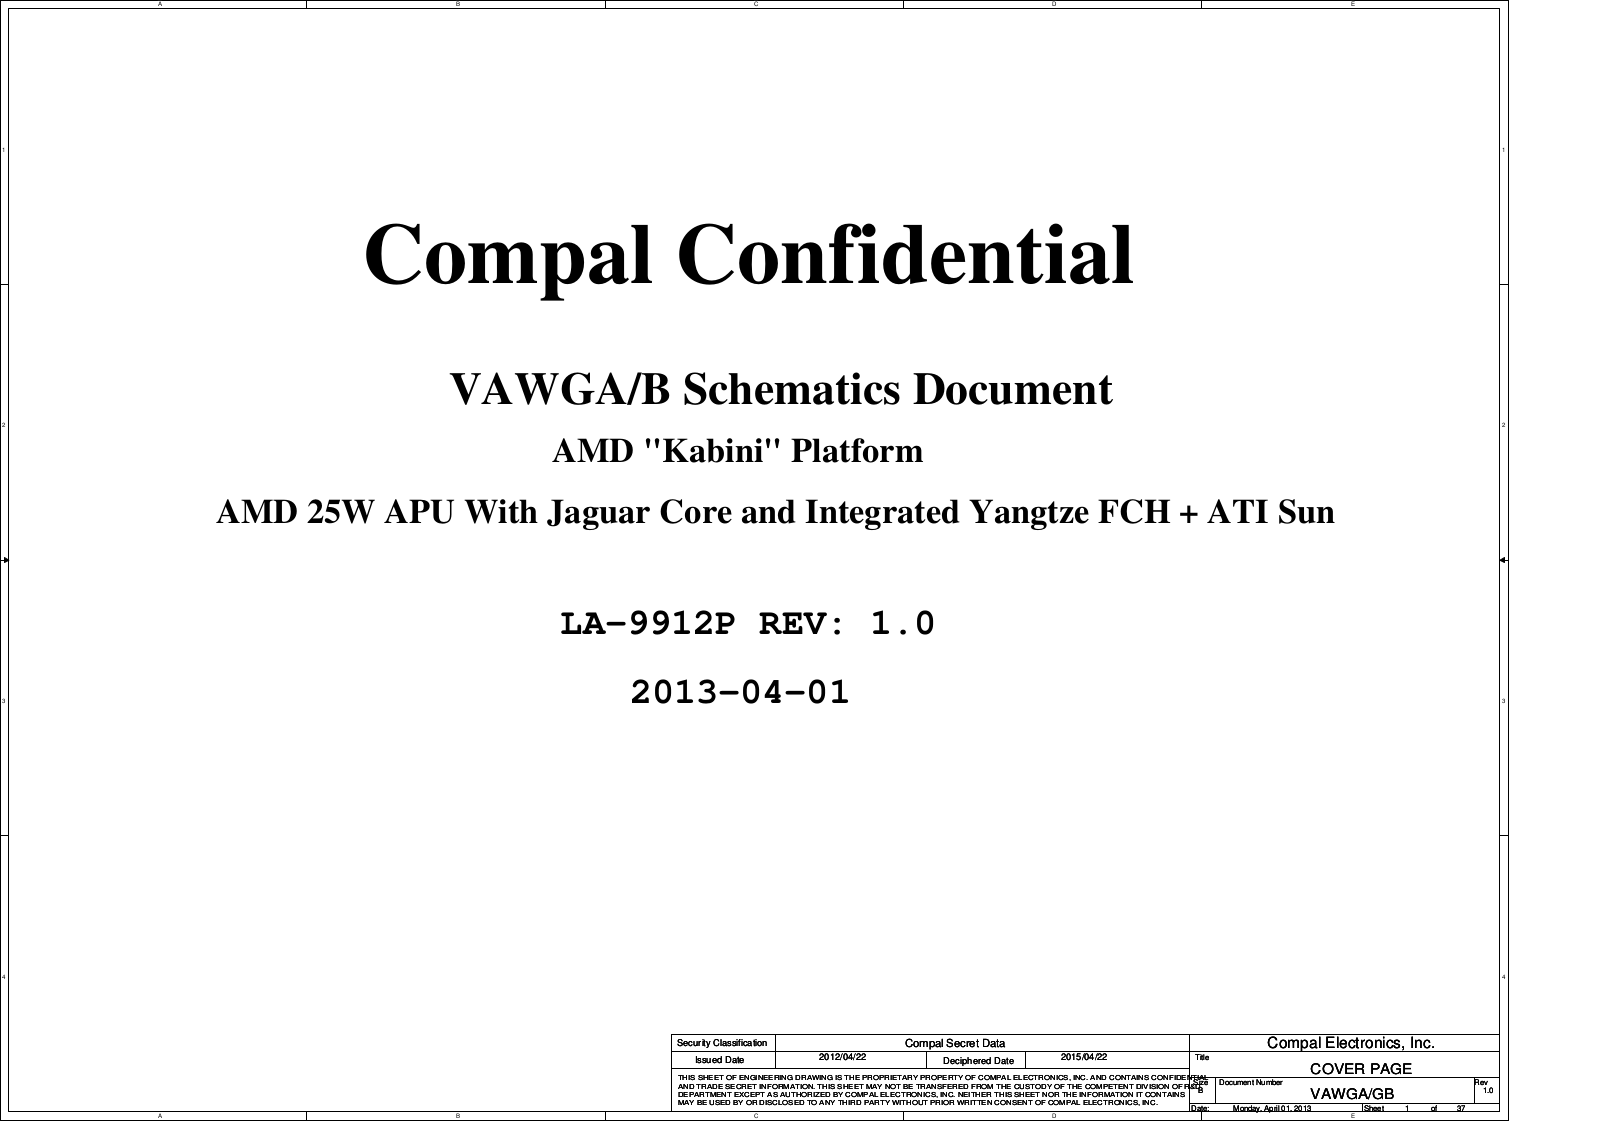 Compal LA-9912P VAWGA, G505, LA-9912P VAWGB Schematic